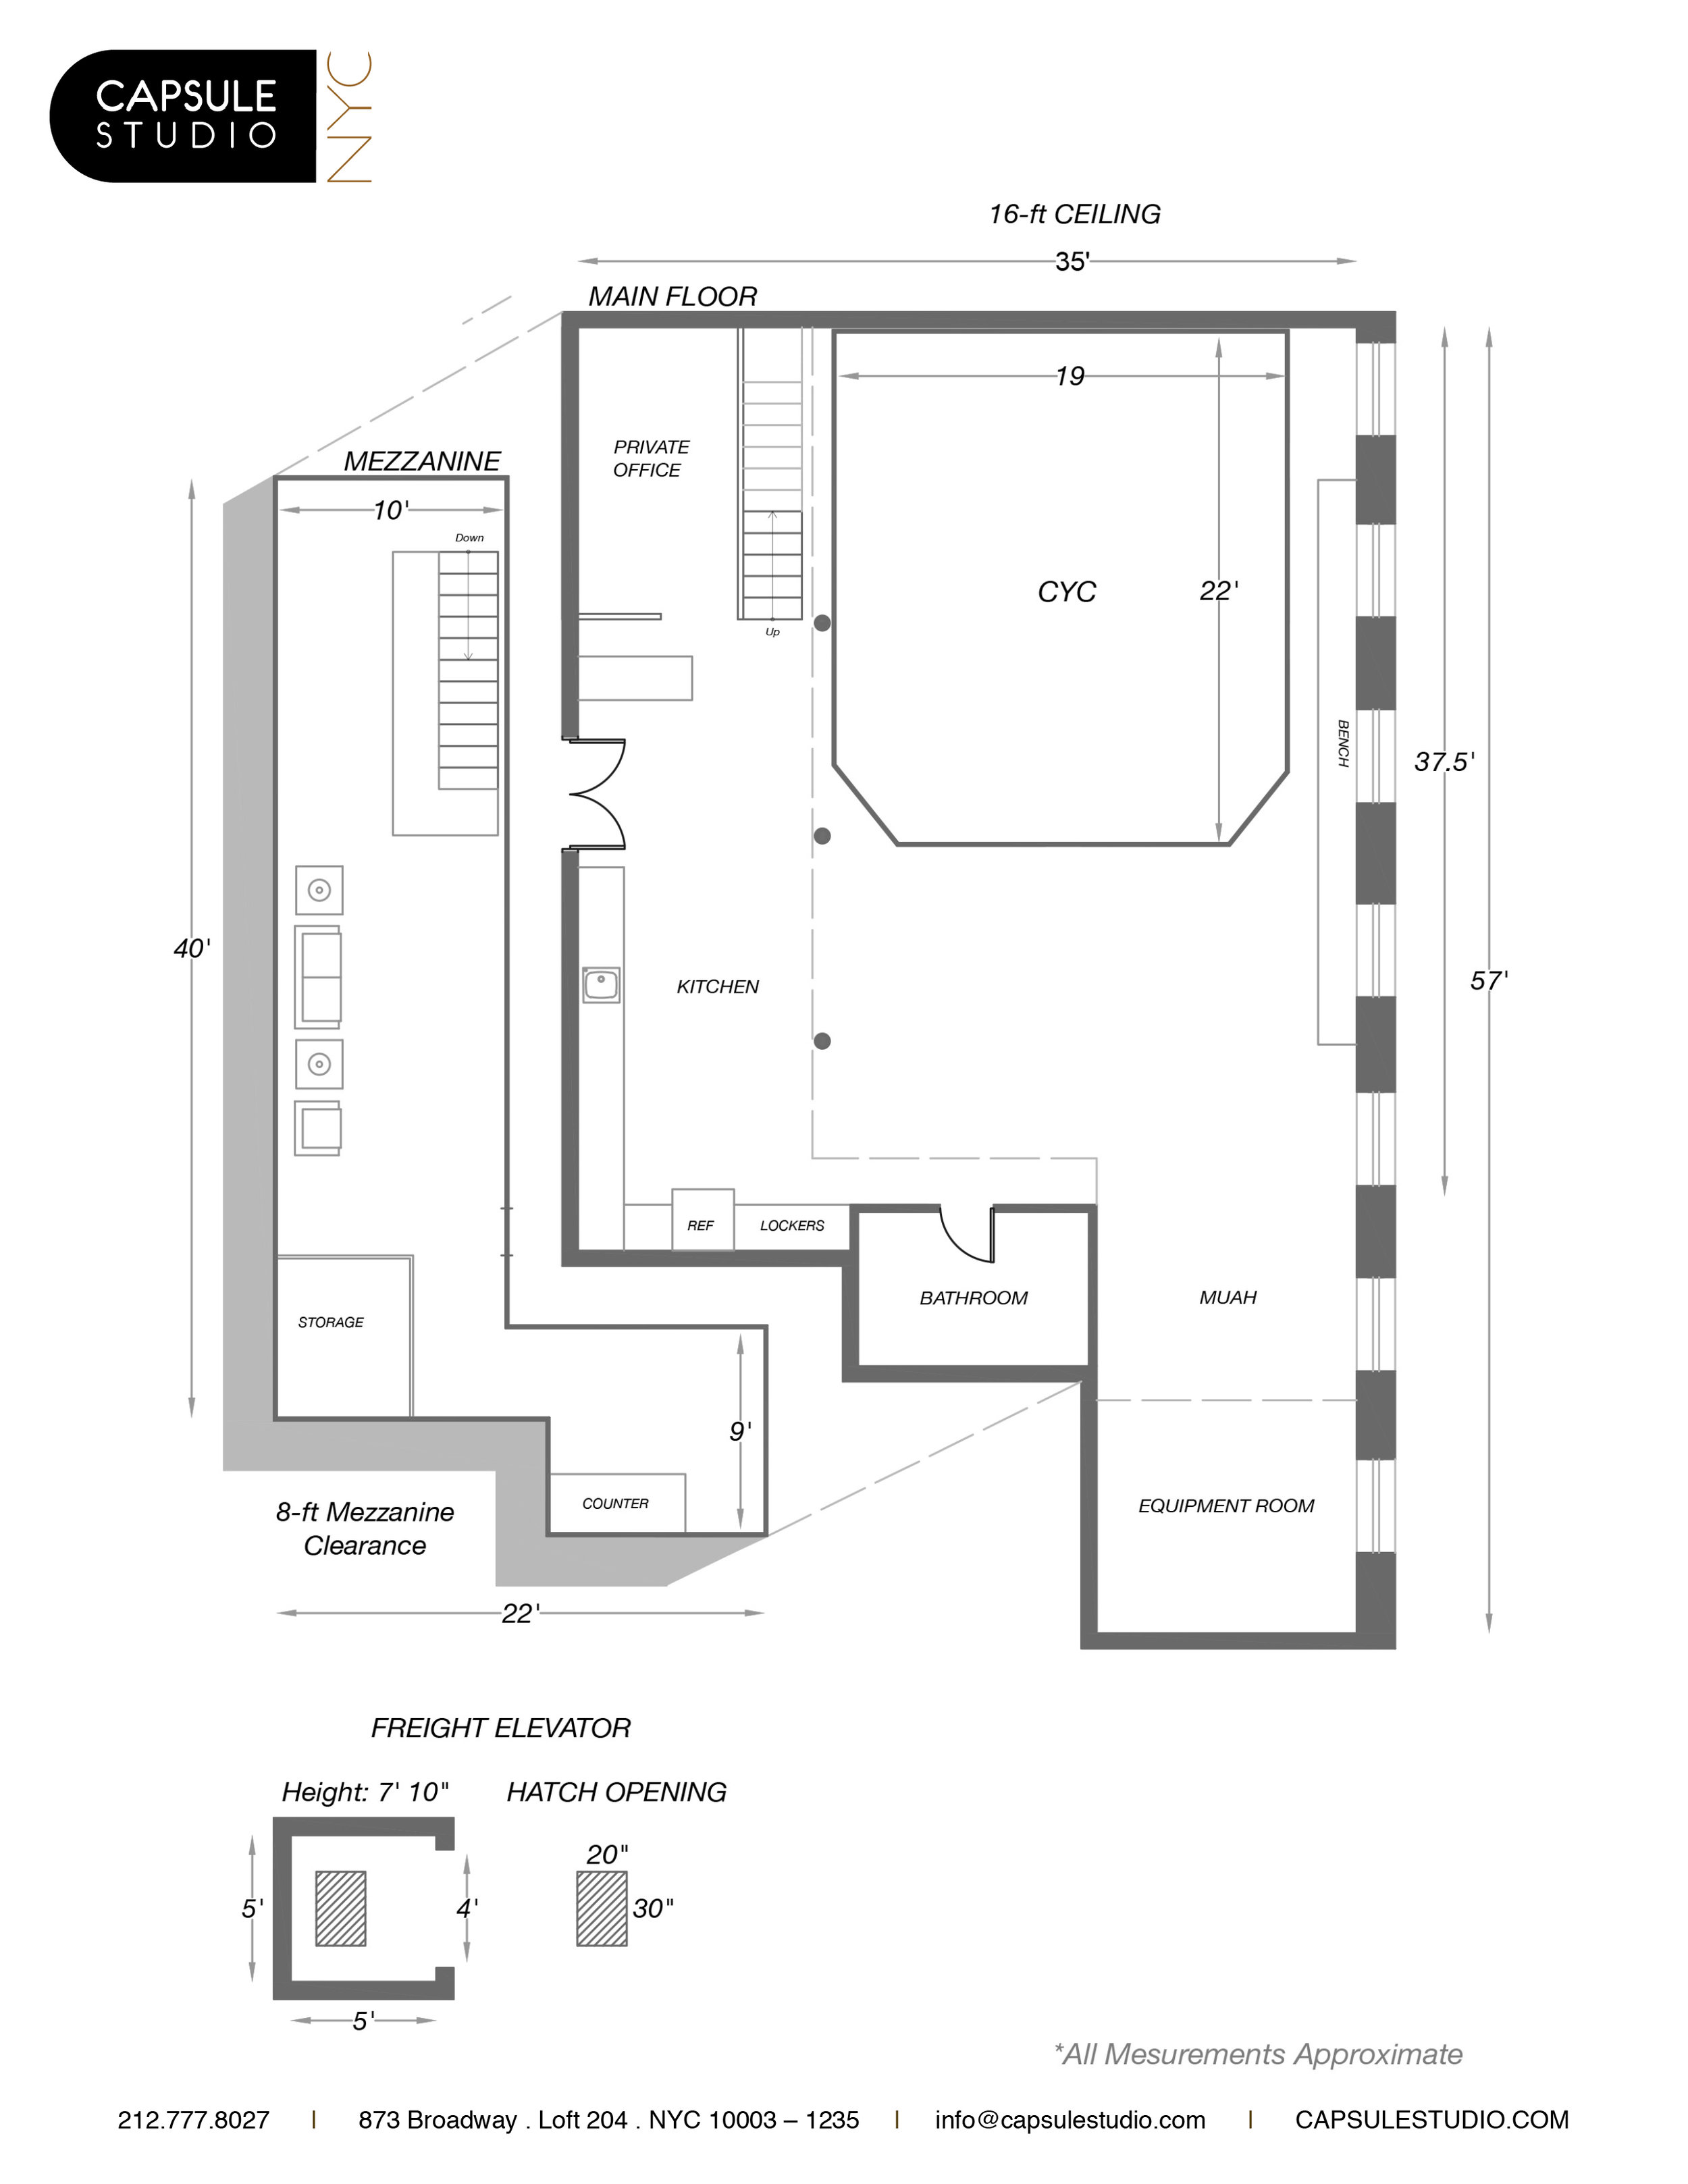 Main Floor Plan.Capsule.jpg